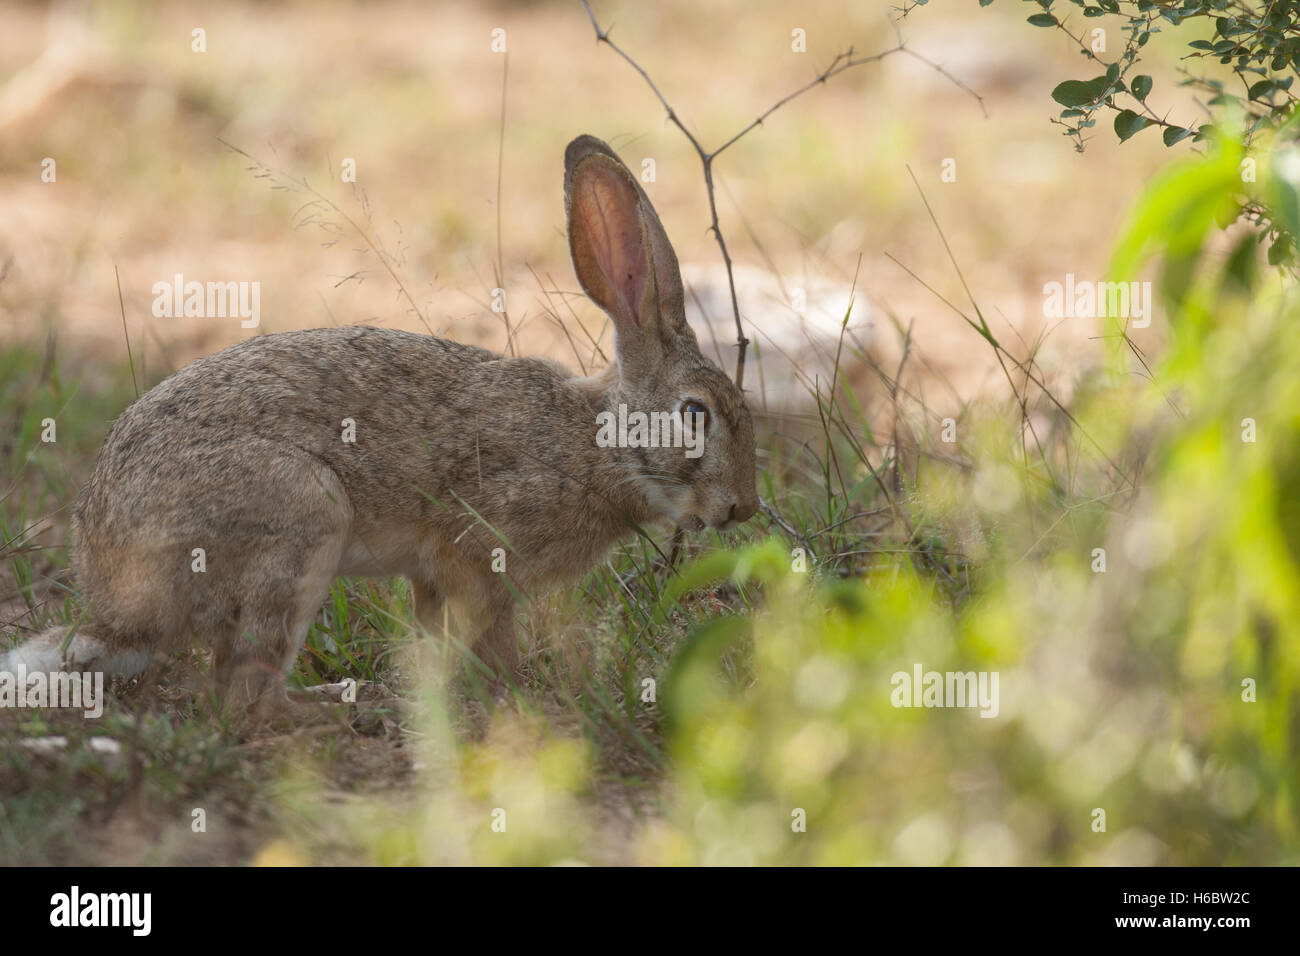 La nuque noire alerte hare dans la réserve de tigres de Sariska Banque D'Images